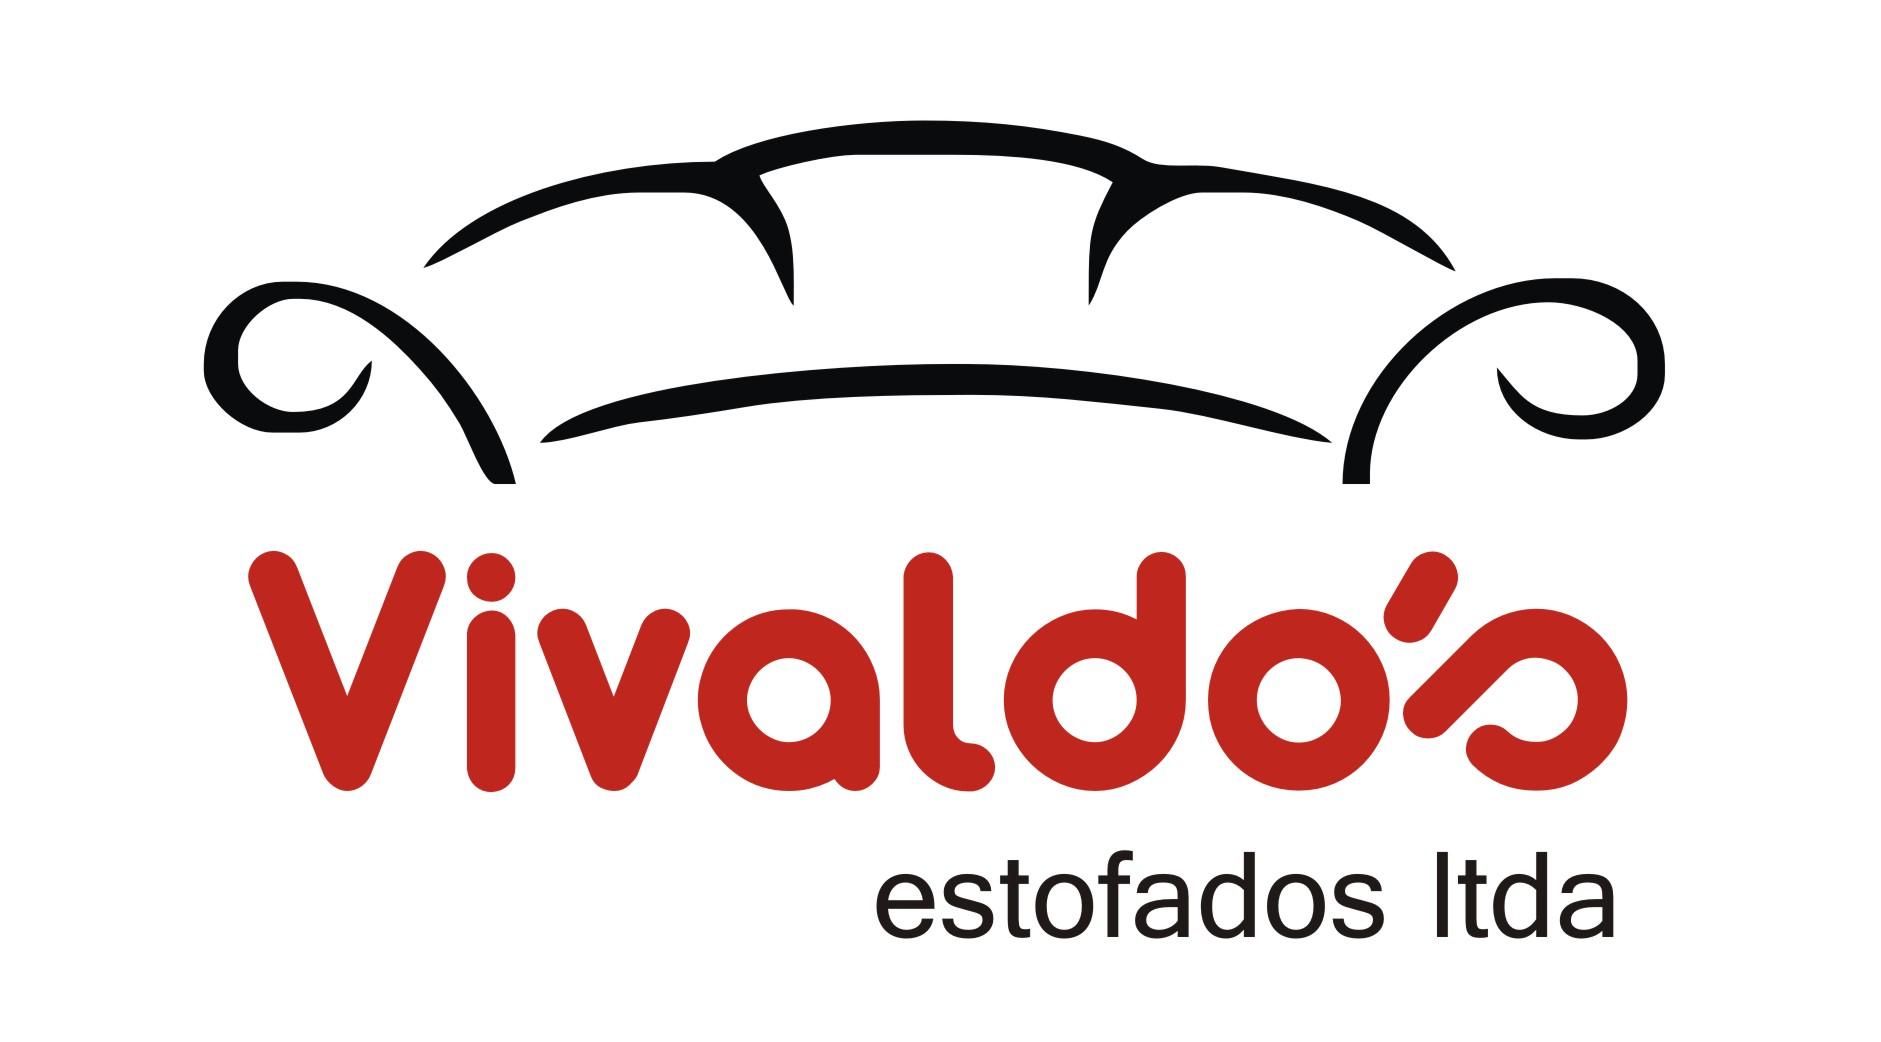 Vivaldo's Estofados